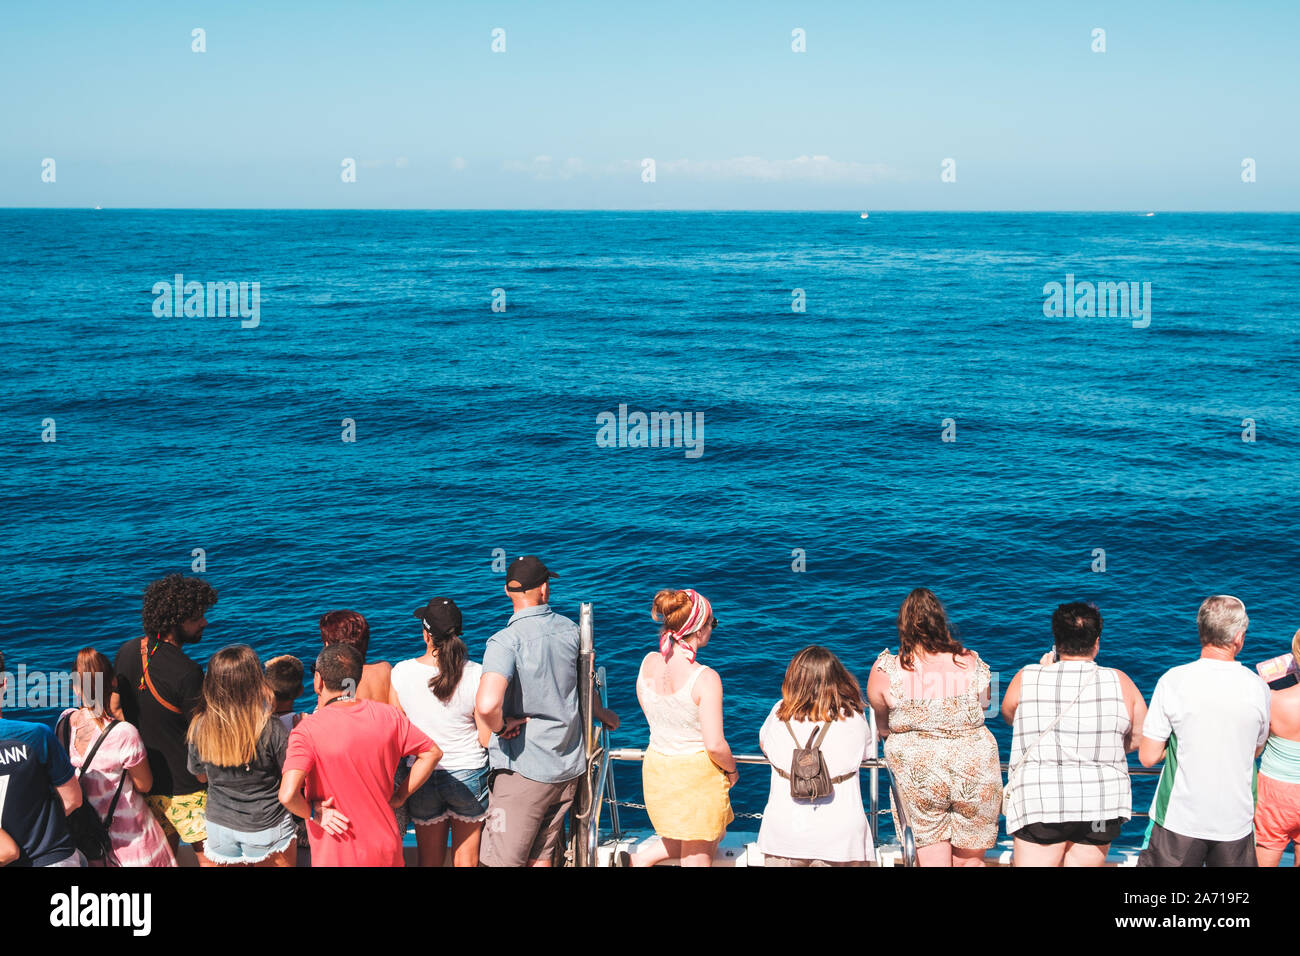 Tenerife, Espagne - Août, 2019 : Groupe de personnes sur le bateau de derrière à la recherche sur l'océan sur une tour d'observation des baleines Banque D'Images